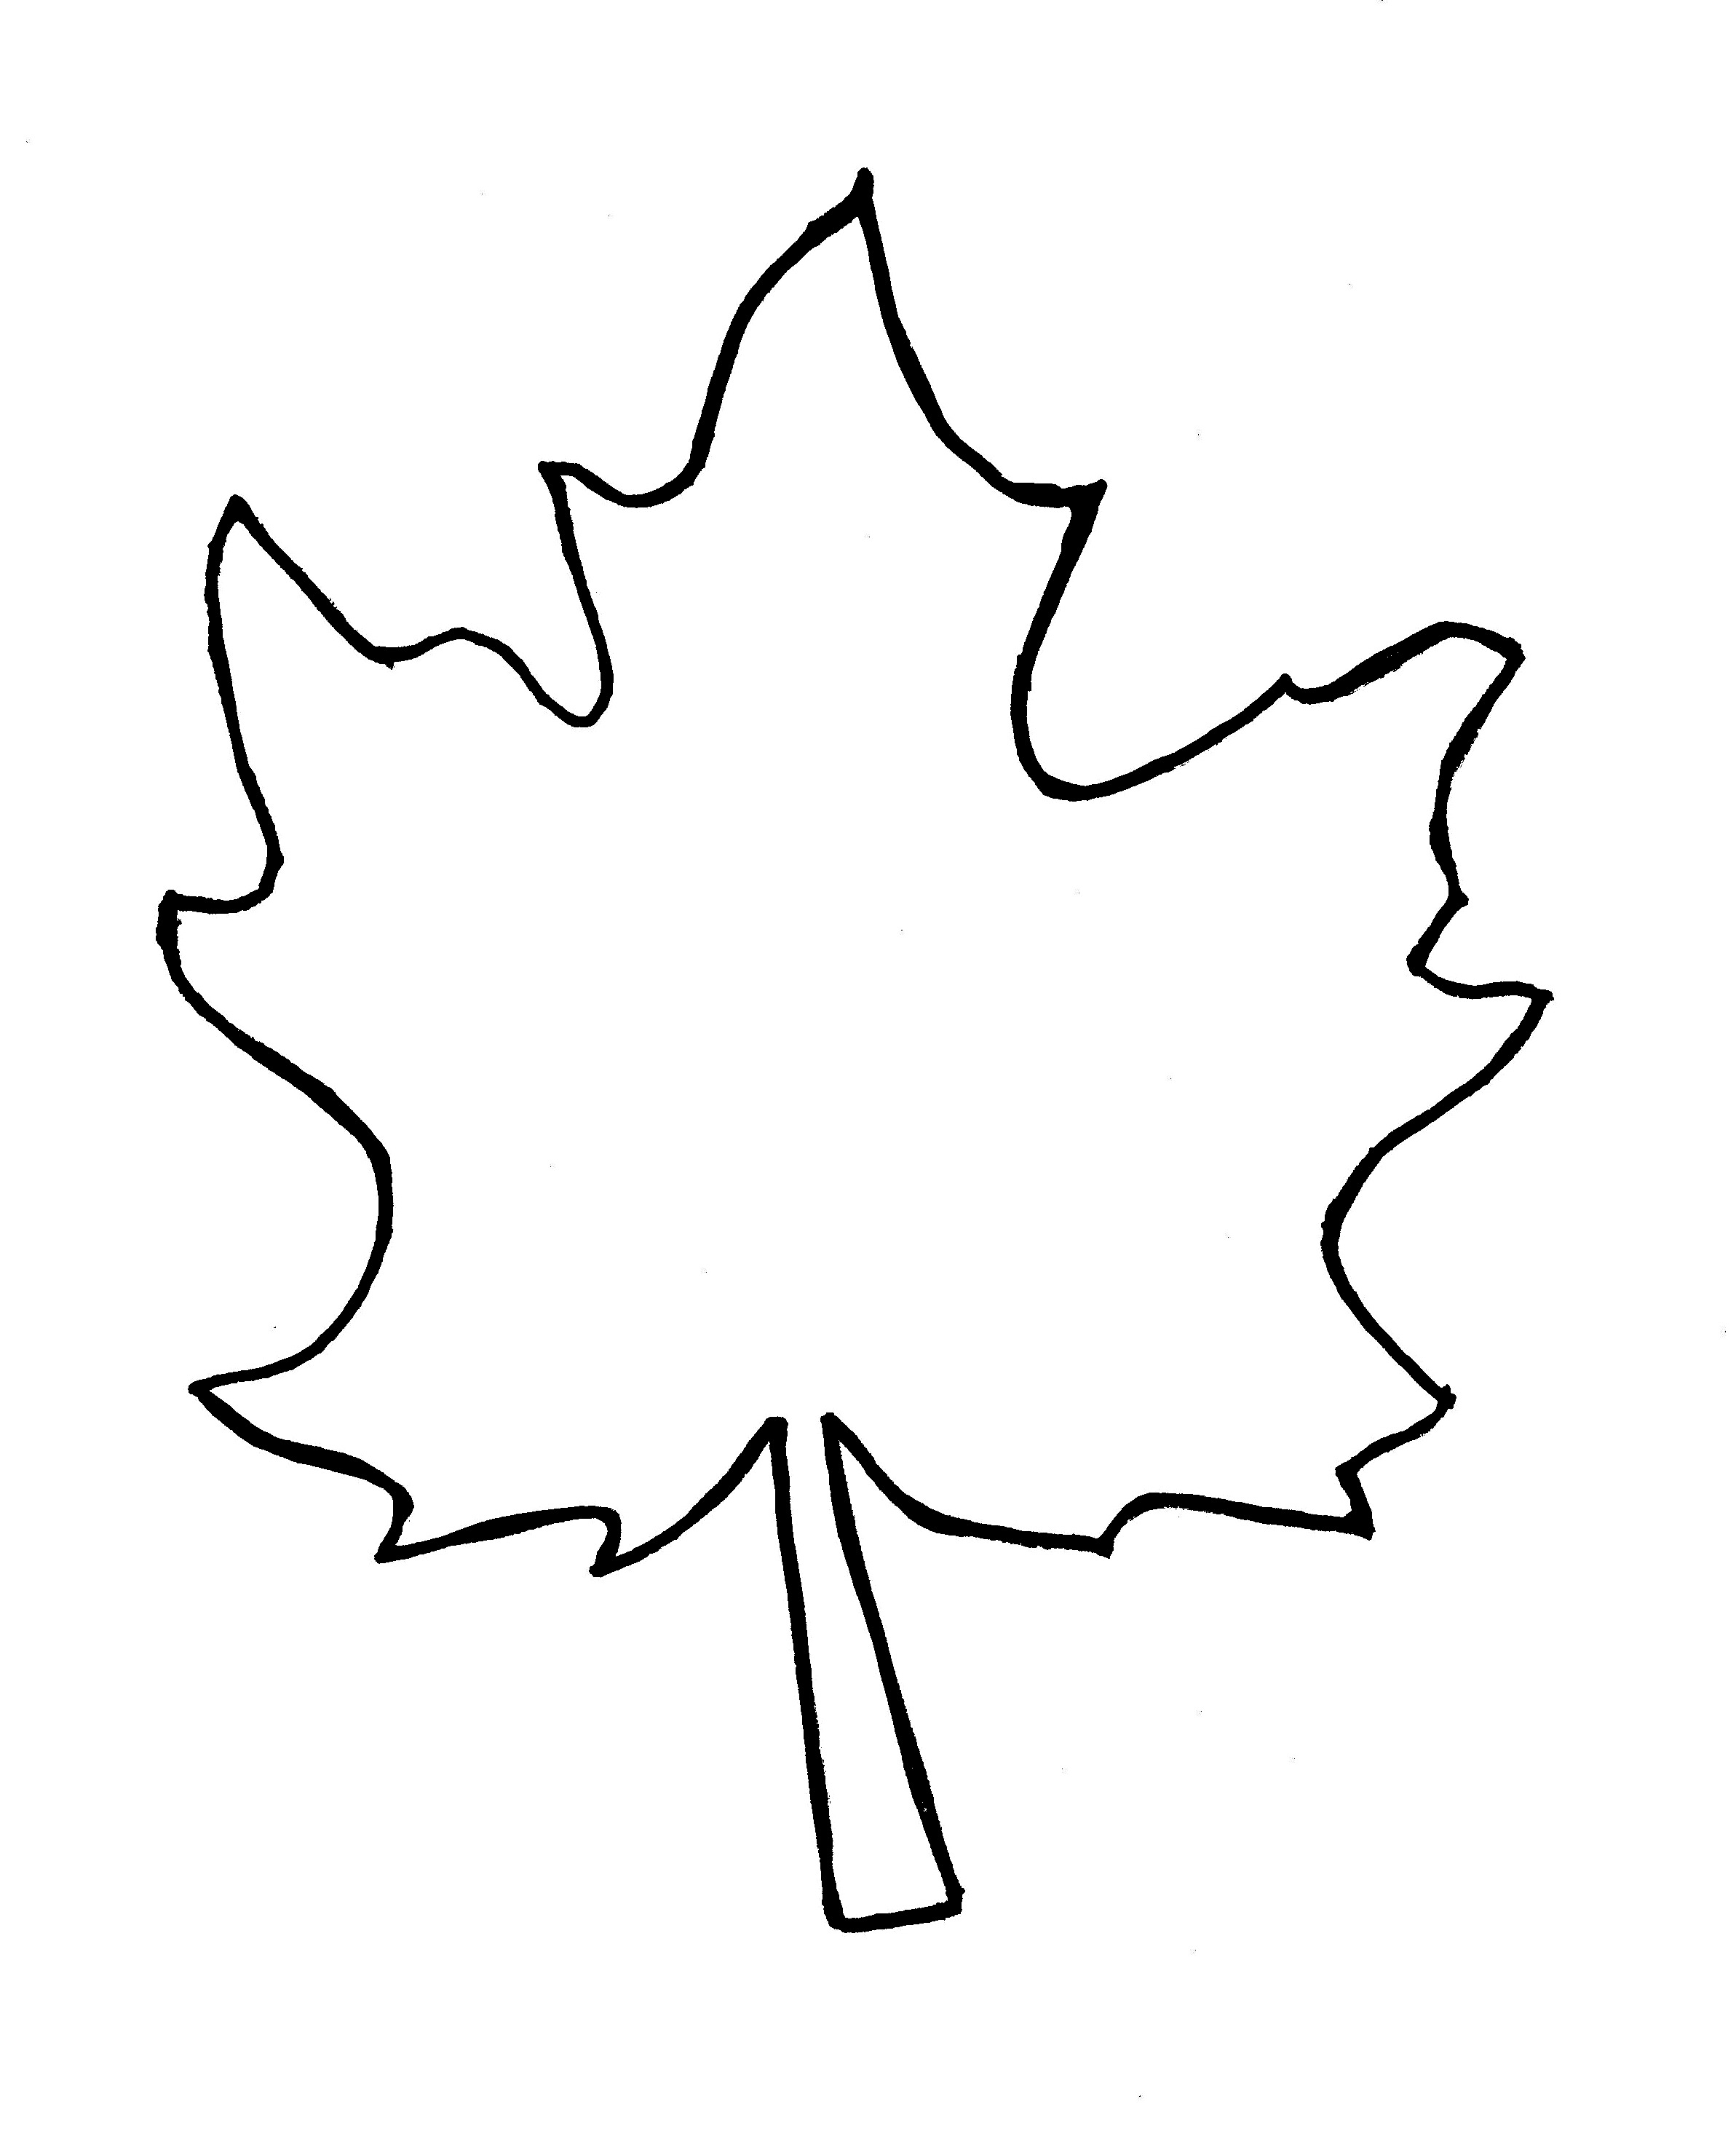 Images For > Leaf Outline Clip Art